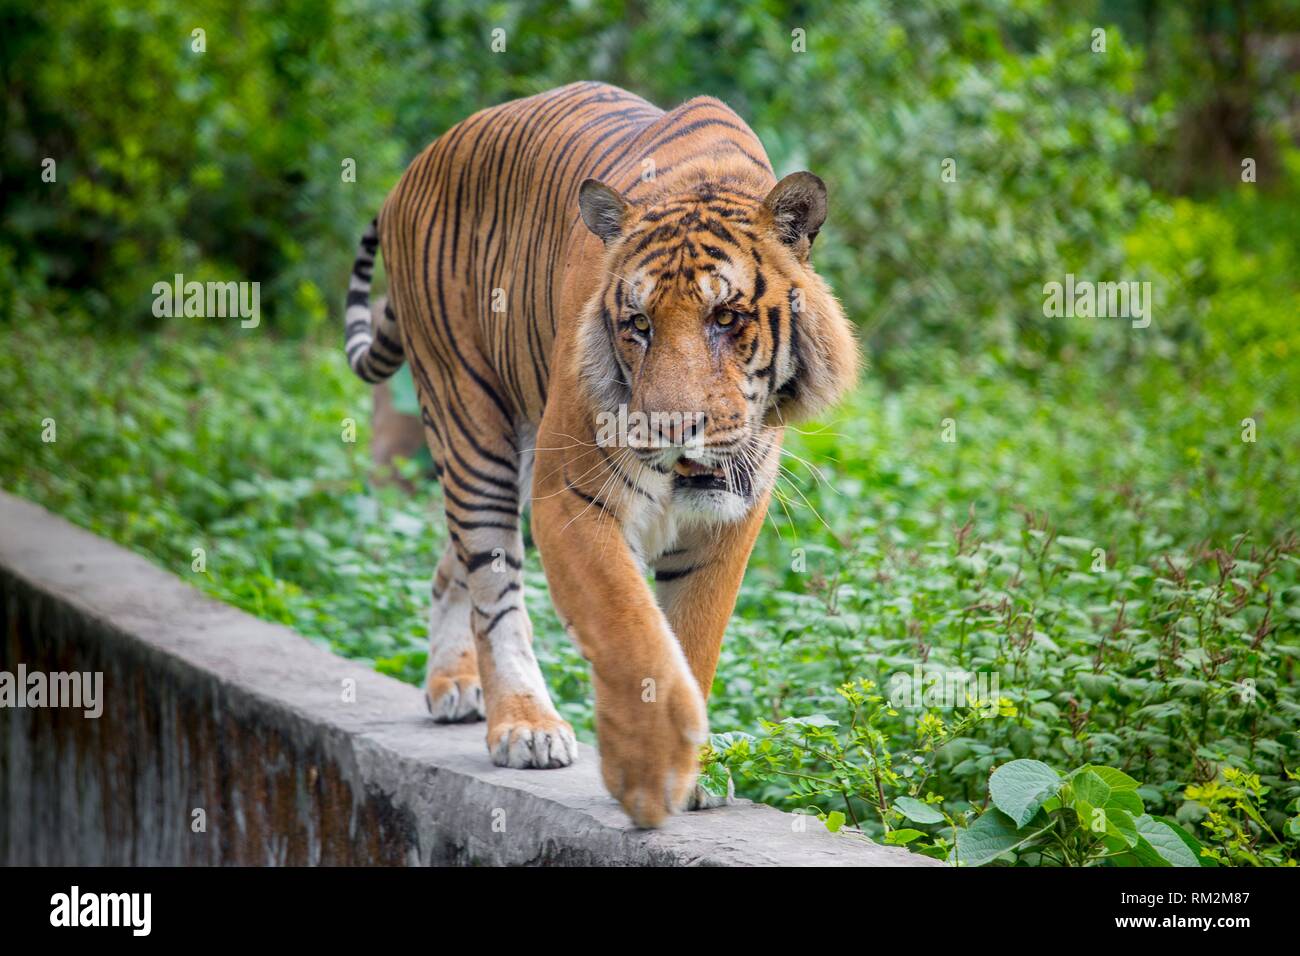 A Royal Bengal Tiger at Dhaka, Bangladesh Stock Photo